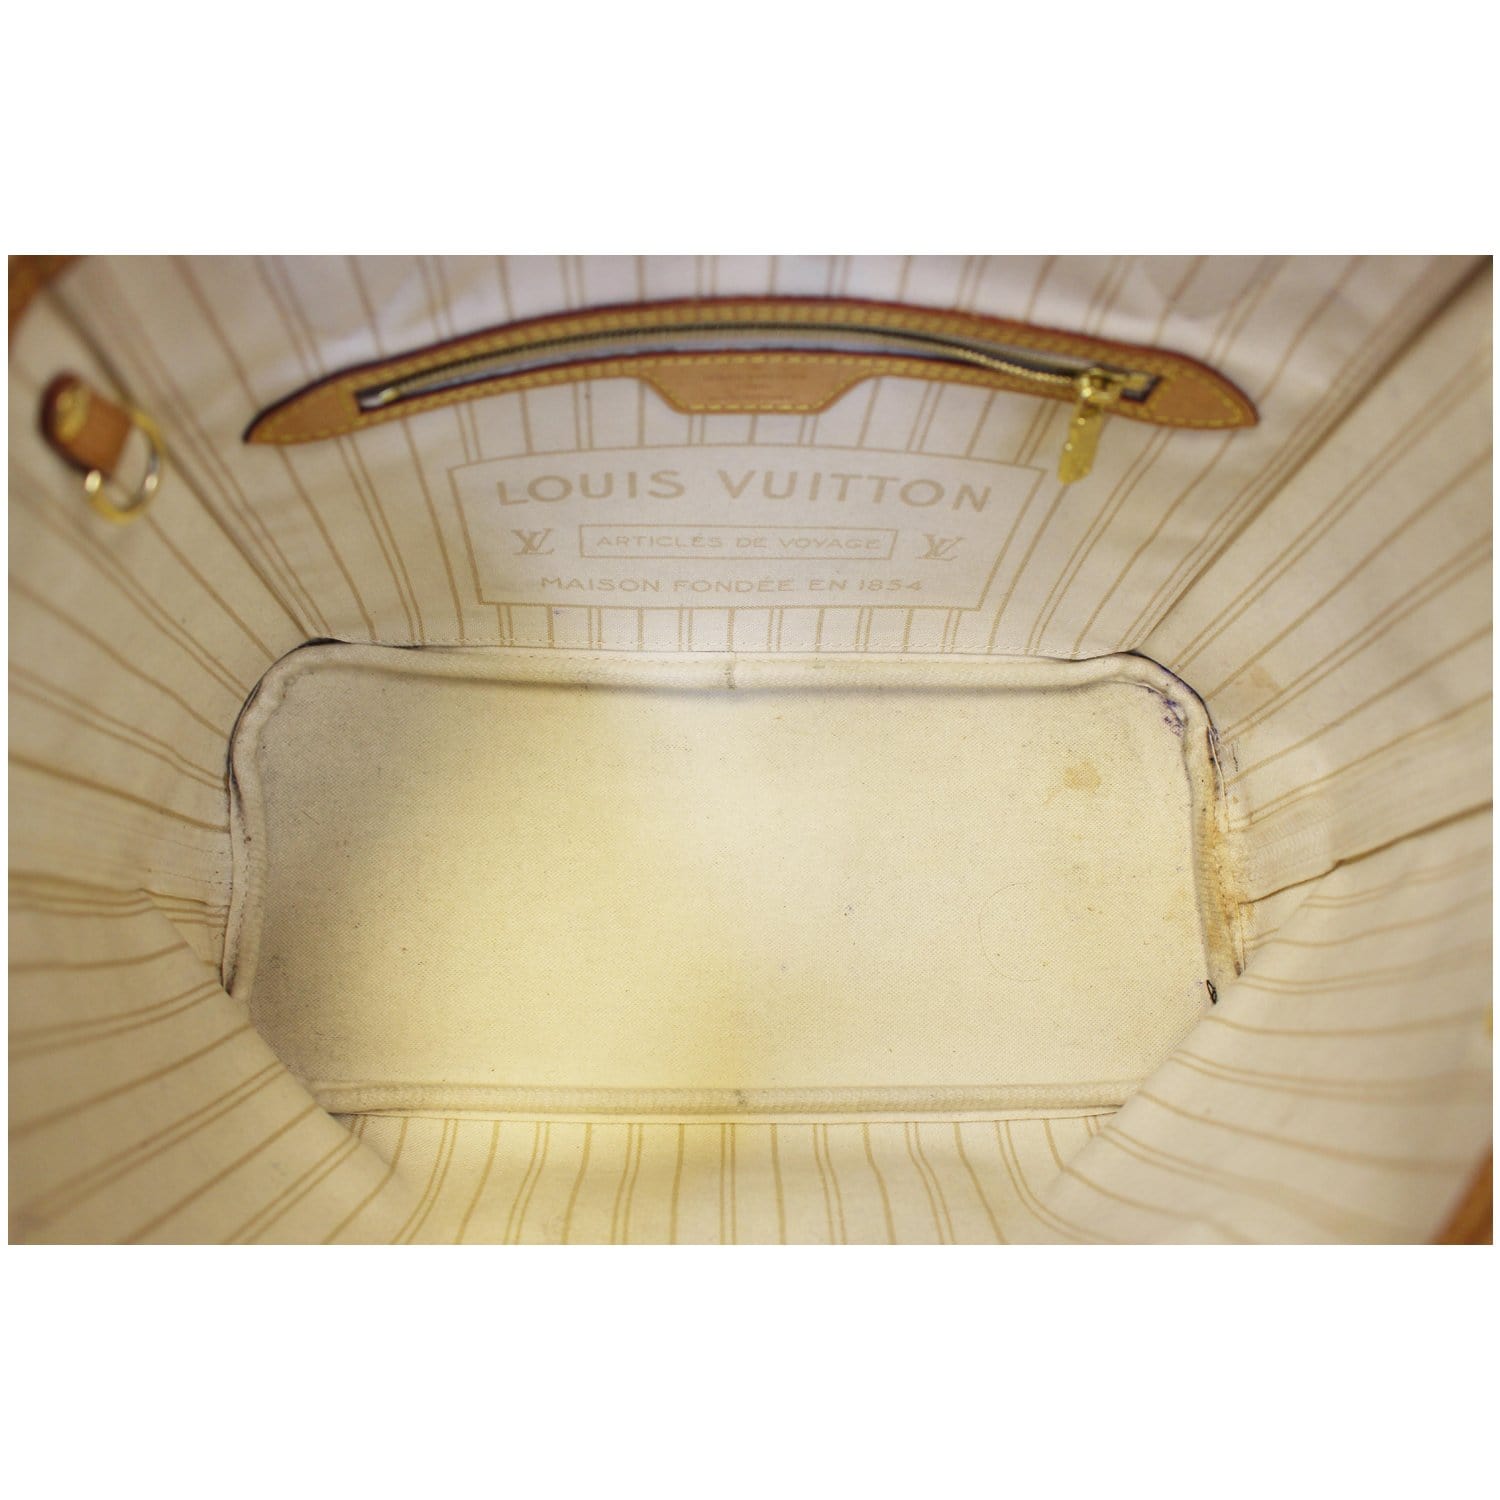 Louis Vuitton Damier Azur Neverfull PM w/ Pouch - Neutrals Totes, Handbags  - LOU776180